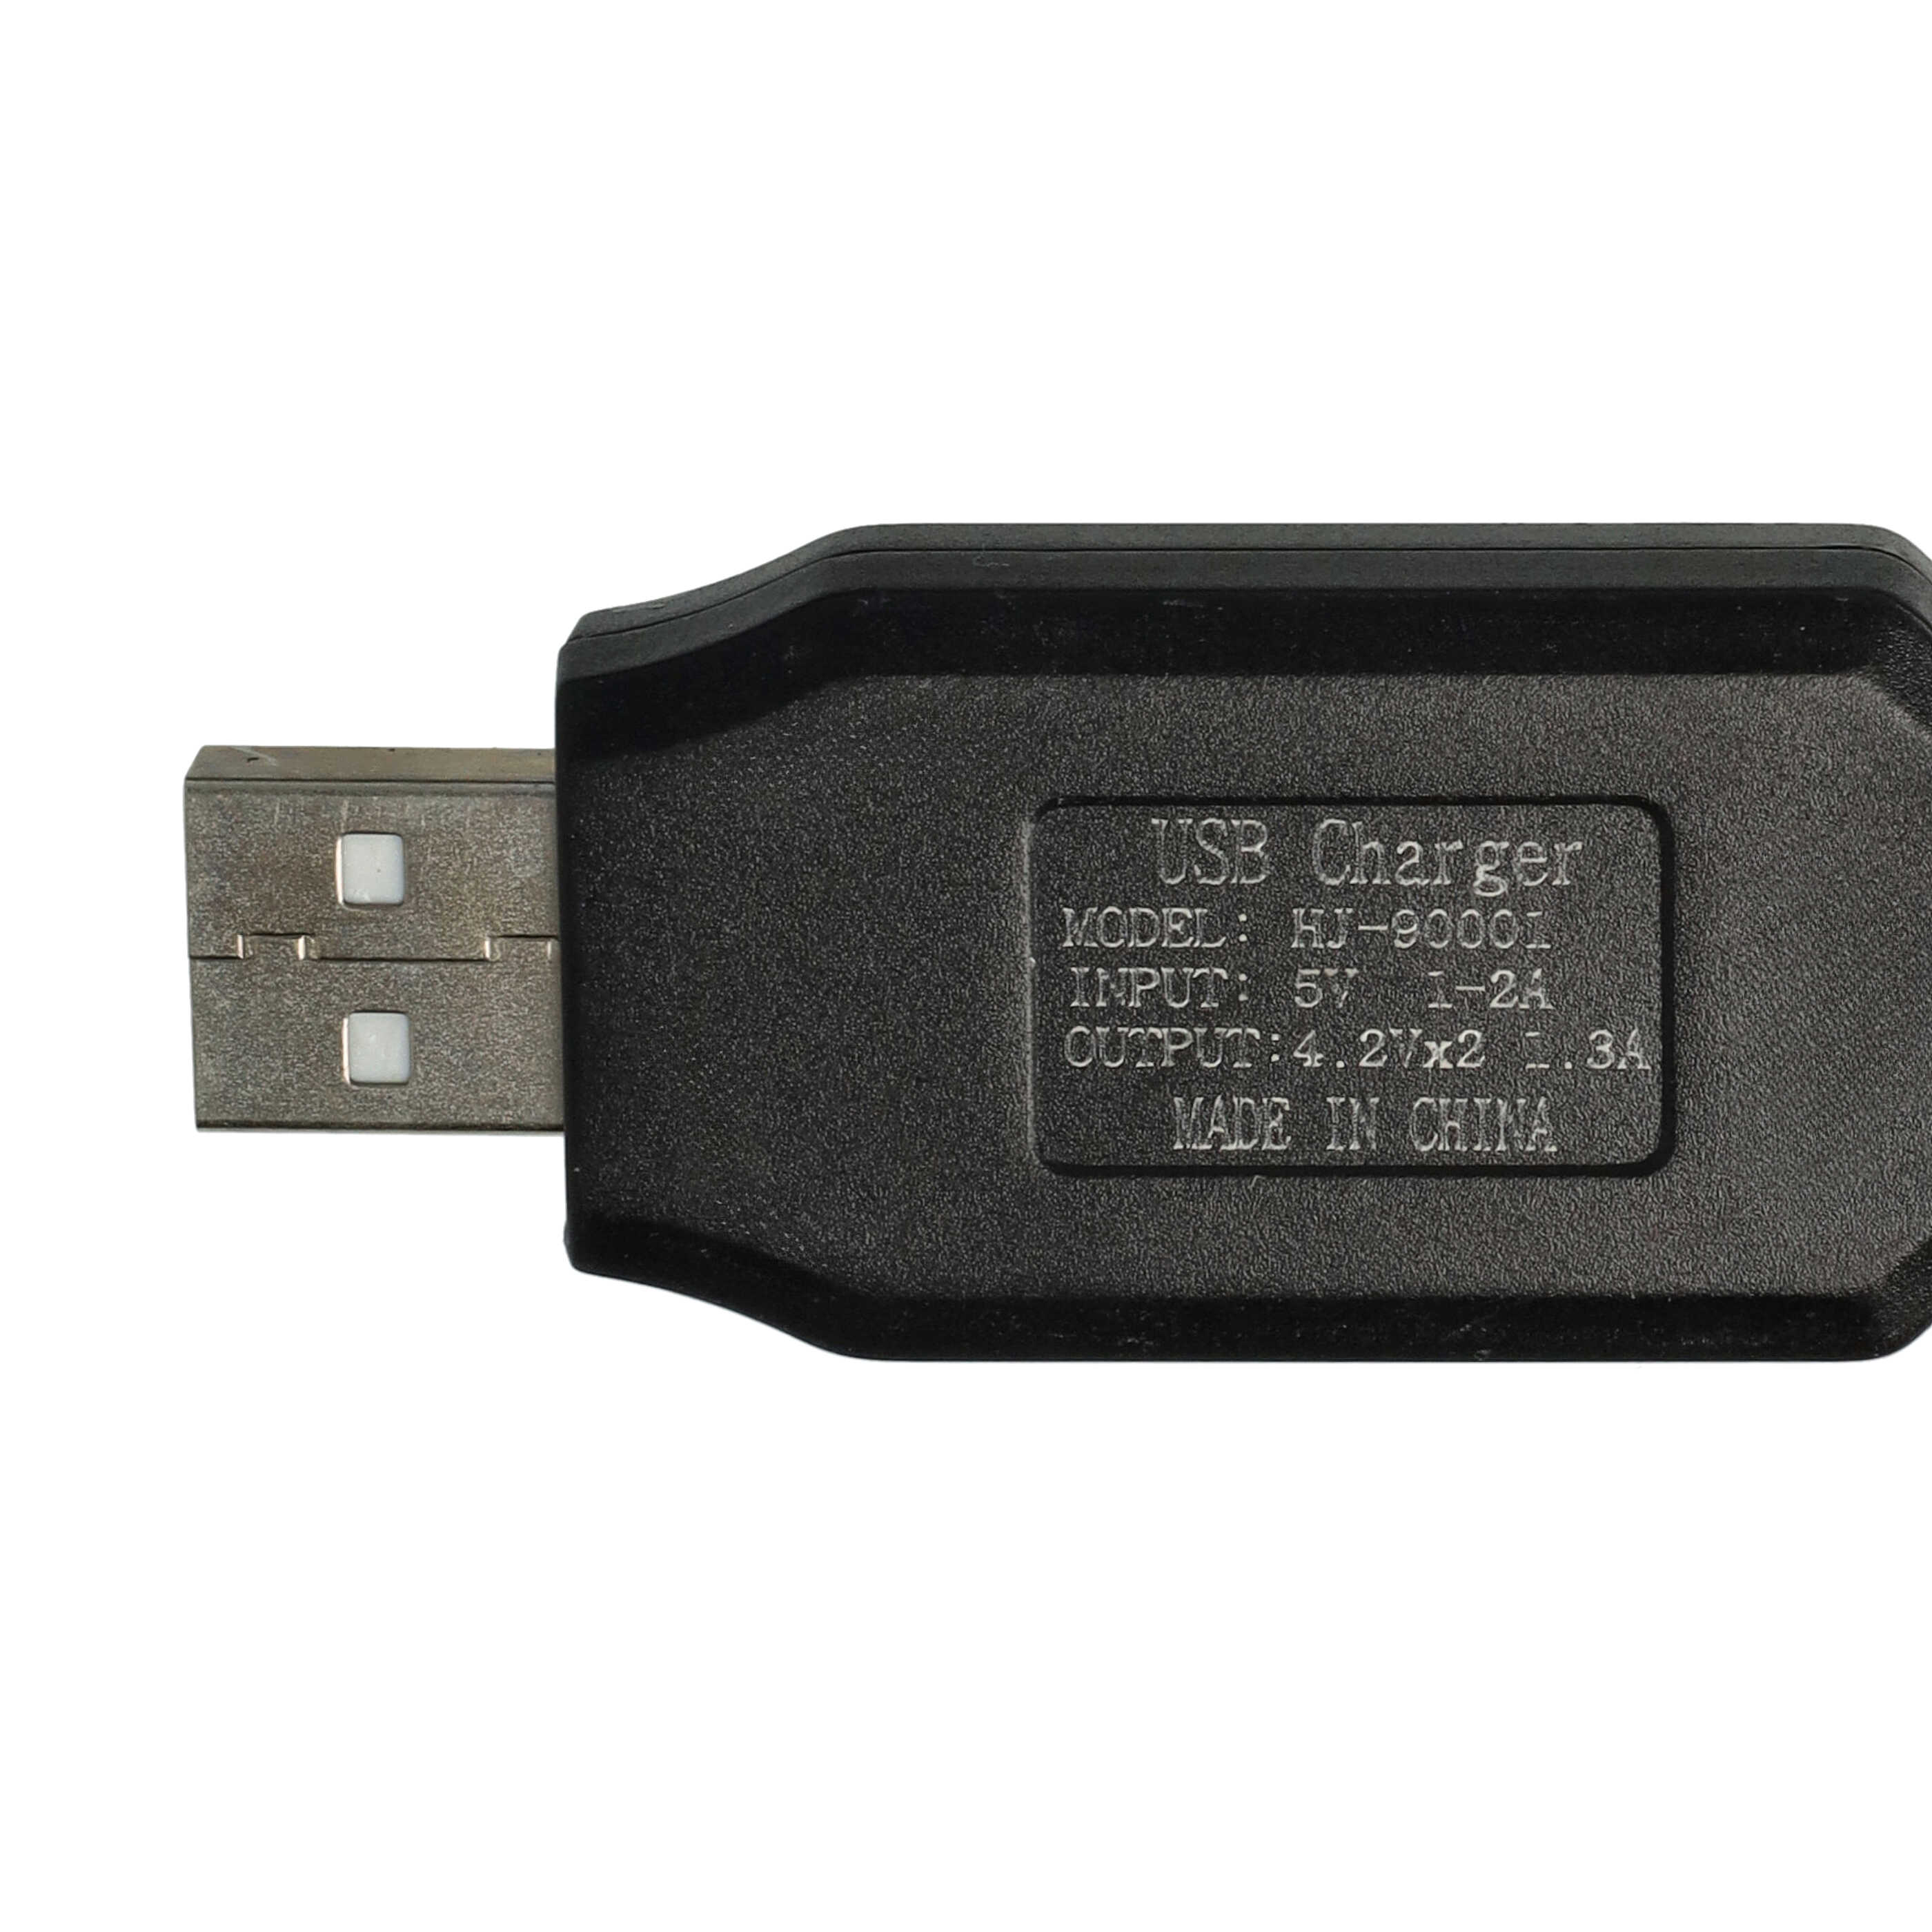 Cavo di ricarica USB per batterie RC con connettore JST XH-3P, pacco batteria per modelli RC - 60 cm 4,2 V